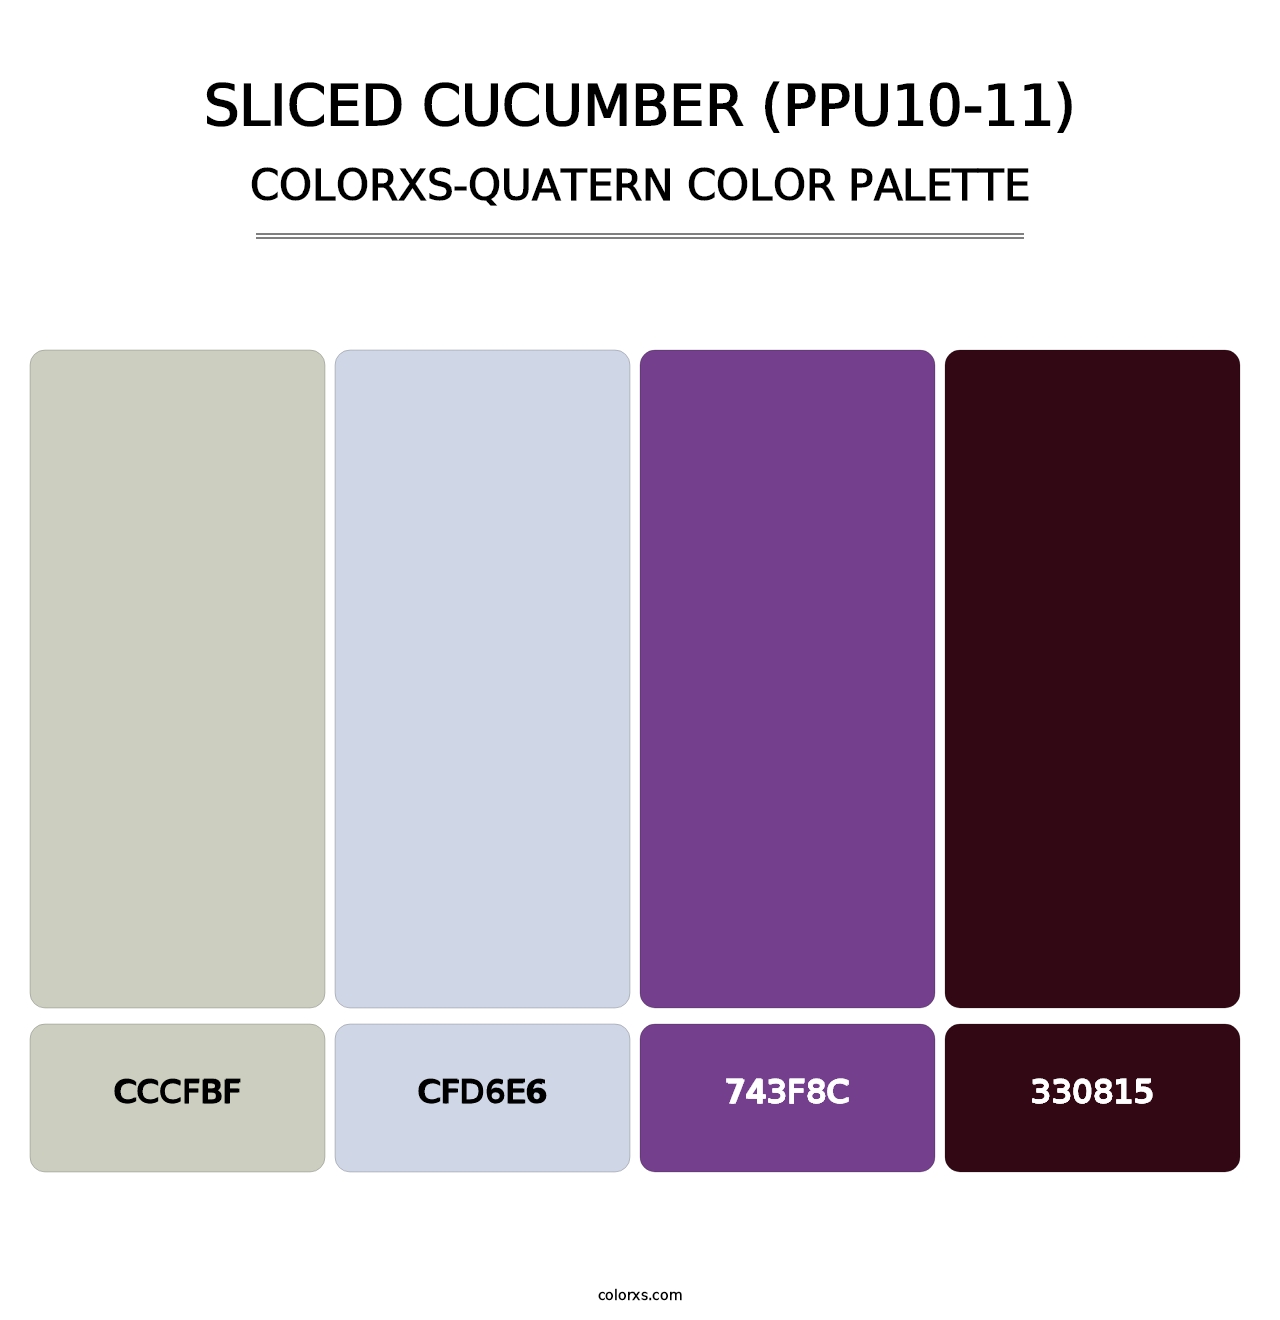 Sliced Cucumber (PPU10-11) - Colorxs Quatern Palette